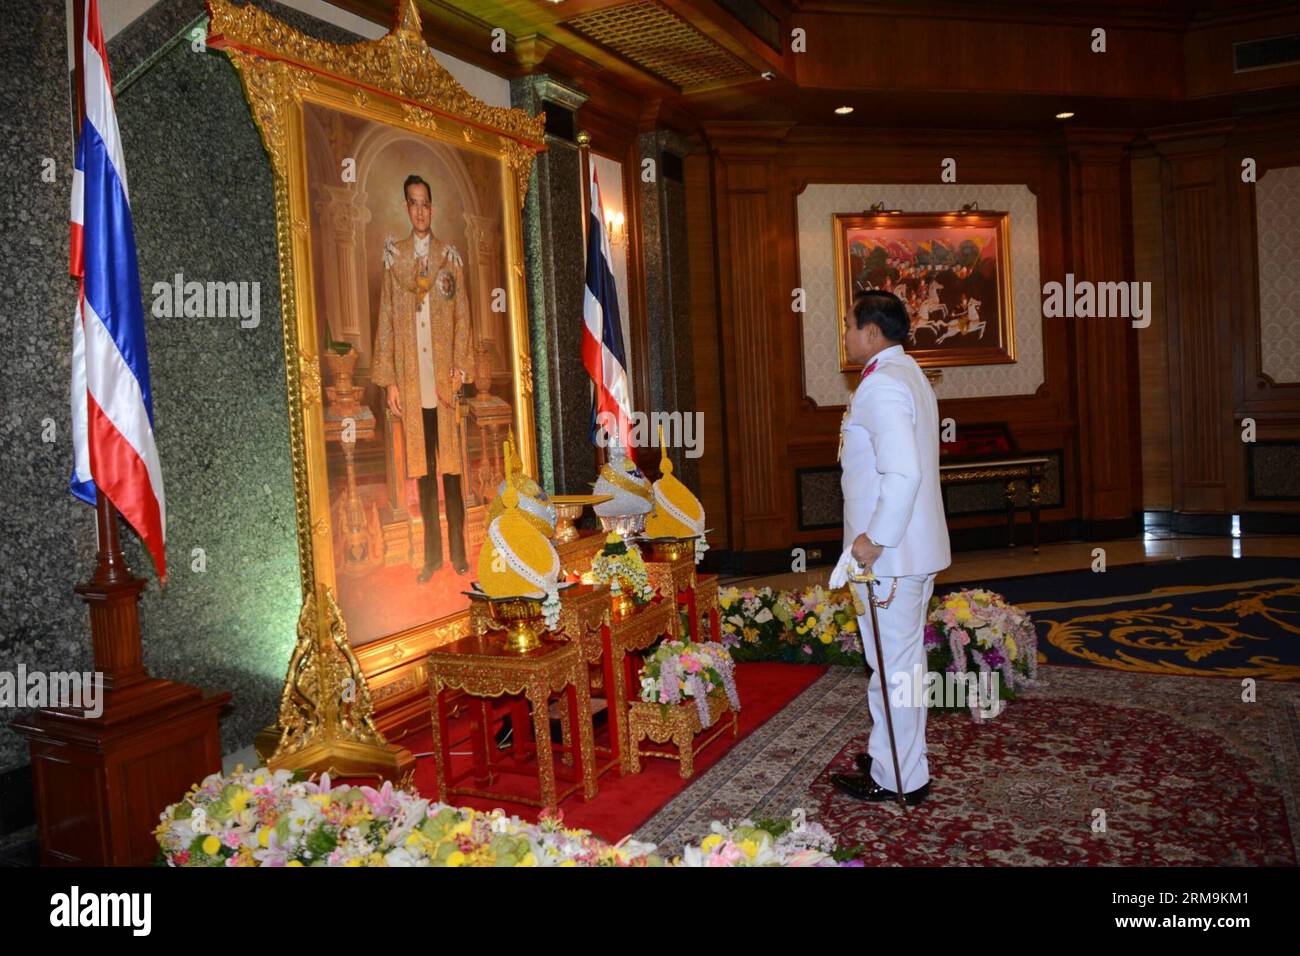 (140526) -- BANGKOK, 26 maggio 2014 (Xinhua) -- il capo dell'esercito thailandese, il generale Prayuth Chan-ocha, riceve un'approvazione reale come capo della giunta di fronte a un ritratto del re tailandese Bhumibol Adulyadej presso il quartier generale dell'esercito reale tailandese a Bangkok, Thailandia, il 26 maggio 2014. Il capo dell'esercito thailandese, il generale Prayuth Chan-ocha, è stato approvato dal monarca thailandese come capo del Consiglio nazionale per la pace e l'ordine, che la scorsa settimana ha organizzato un colpo di stato militare per spodestare un governo eletto custode. (Xinhua/Rachen Sageamsak/Pool) autorizzato da Ytfs THAILAND-BANGKOK-ARMY CHIEF PUBLICATIONxNOTxINxCHN Bangkok maggio 26 2014 XINHUA Foto Stock